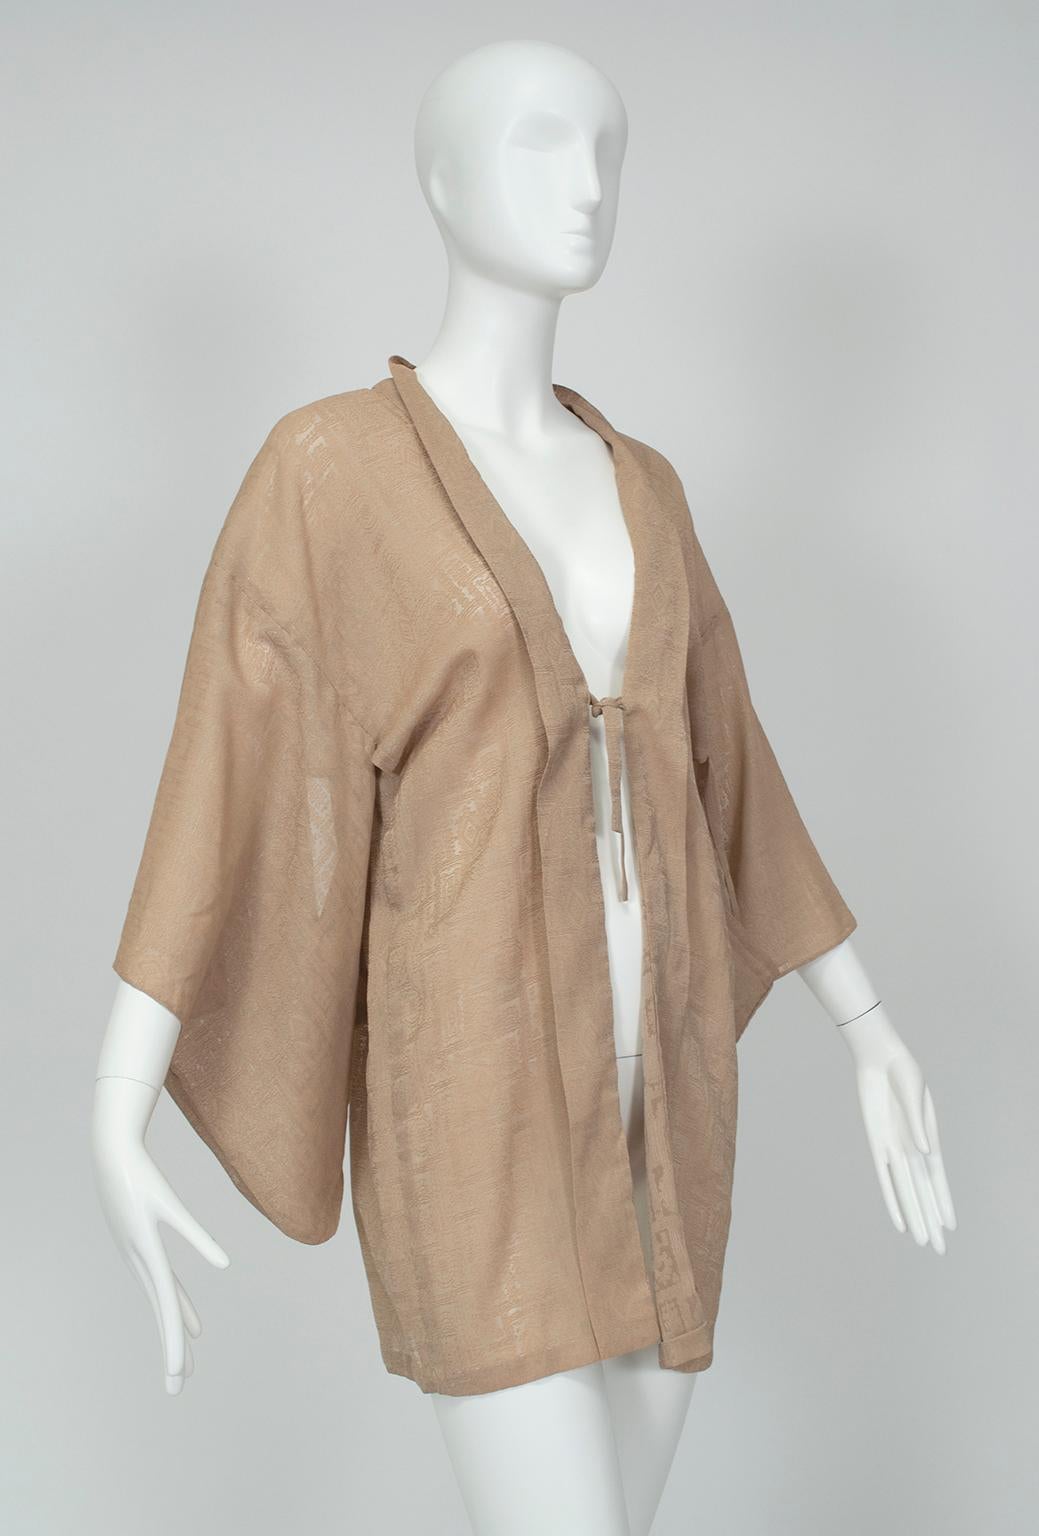 Die manchmal als Iro Muji bezeichneten kurzen Kimonos können sowohl als Überzieher für Dessous als auch als leichte Blusen oder Jacken dienen. Diese ungewöhnliche Version in einer vielseitigen Kittelfarbe zeichnet sich durch eine reiche Textur und